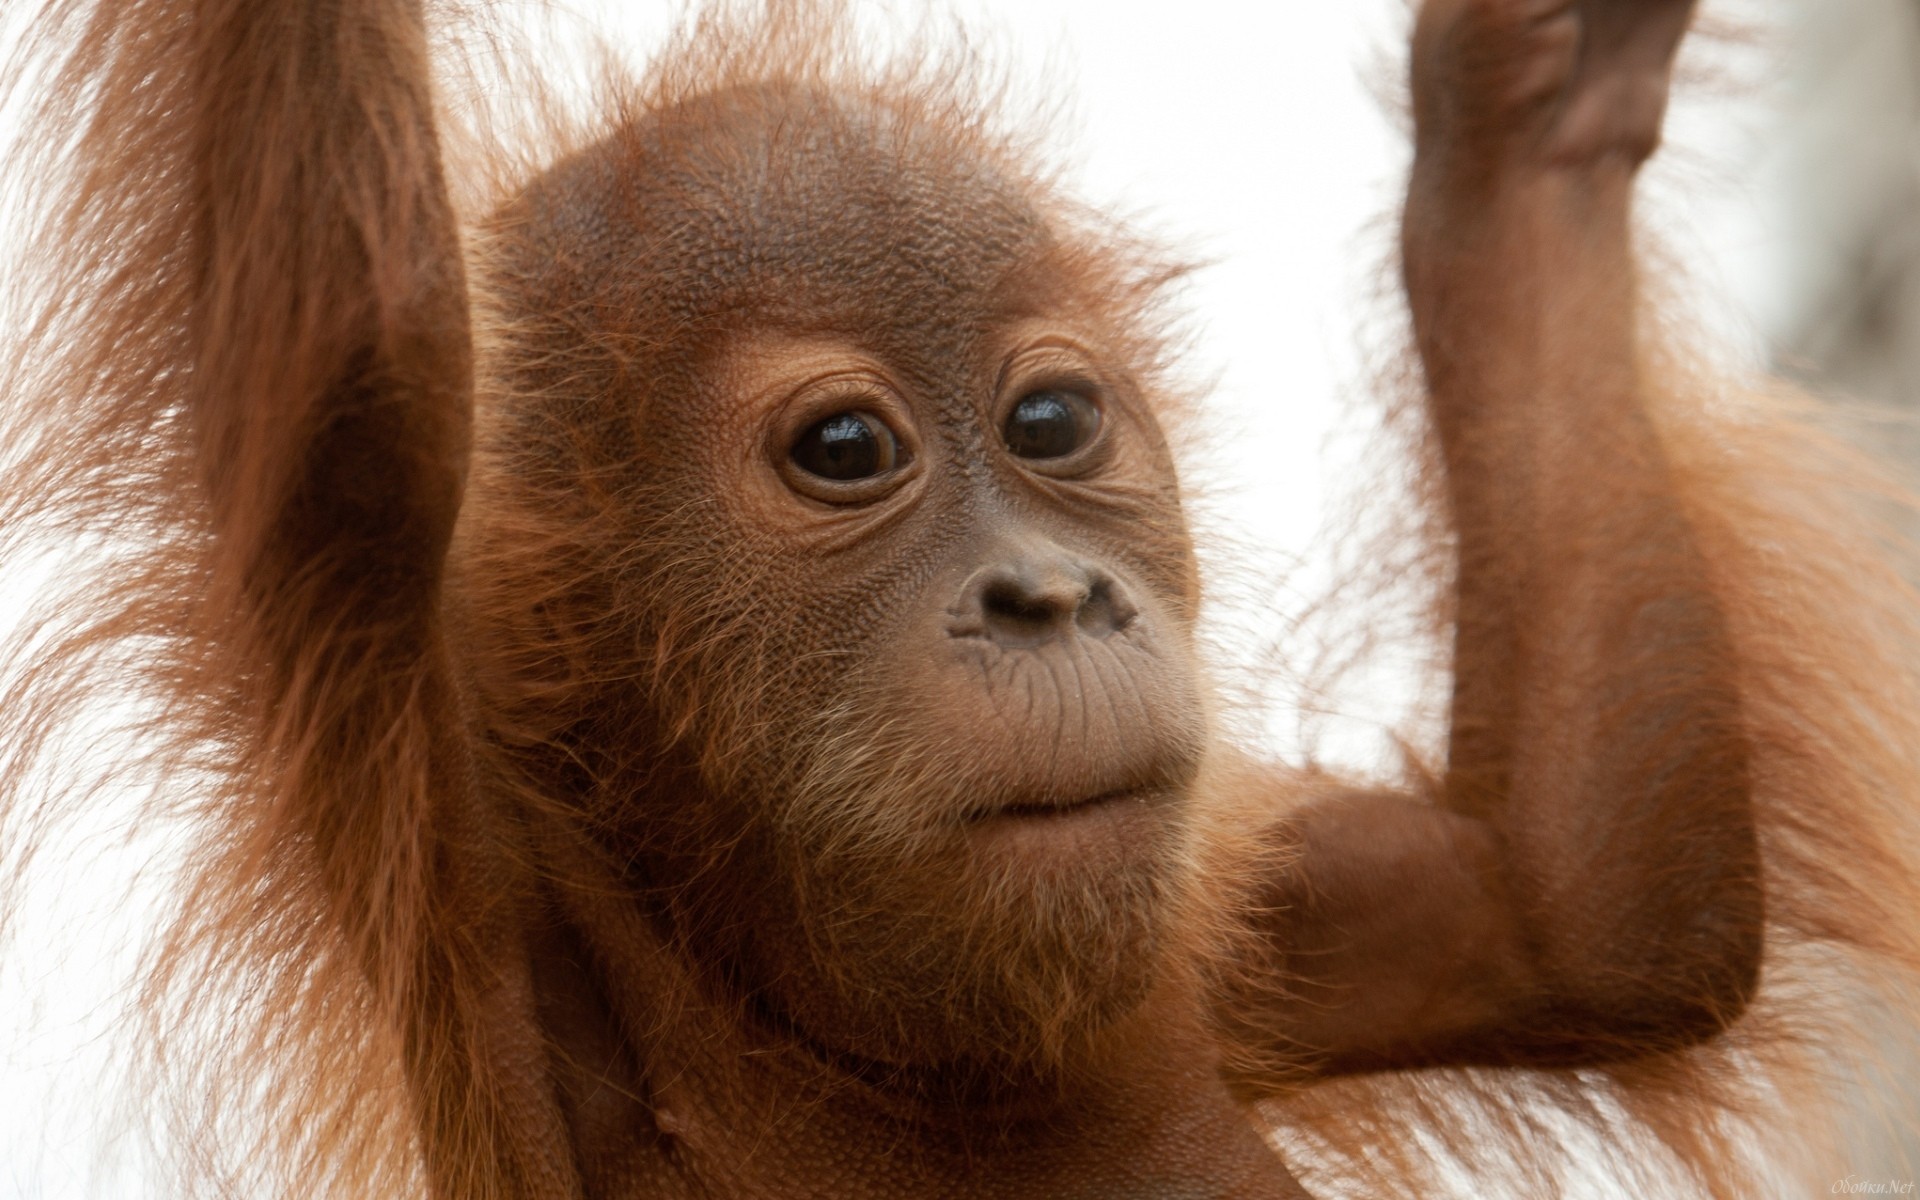 Скачать обои бесплатно Животные, Орангутанг картинка на рабочий стол ПК